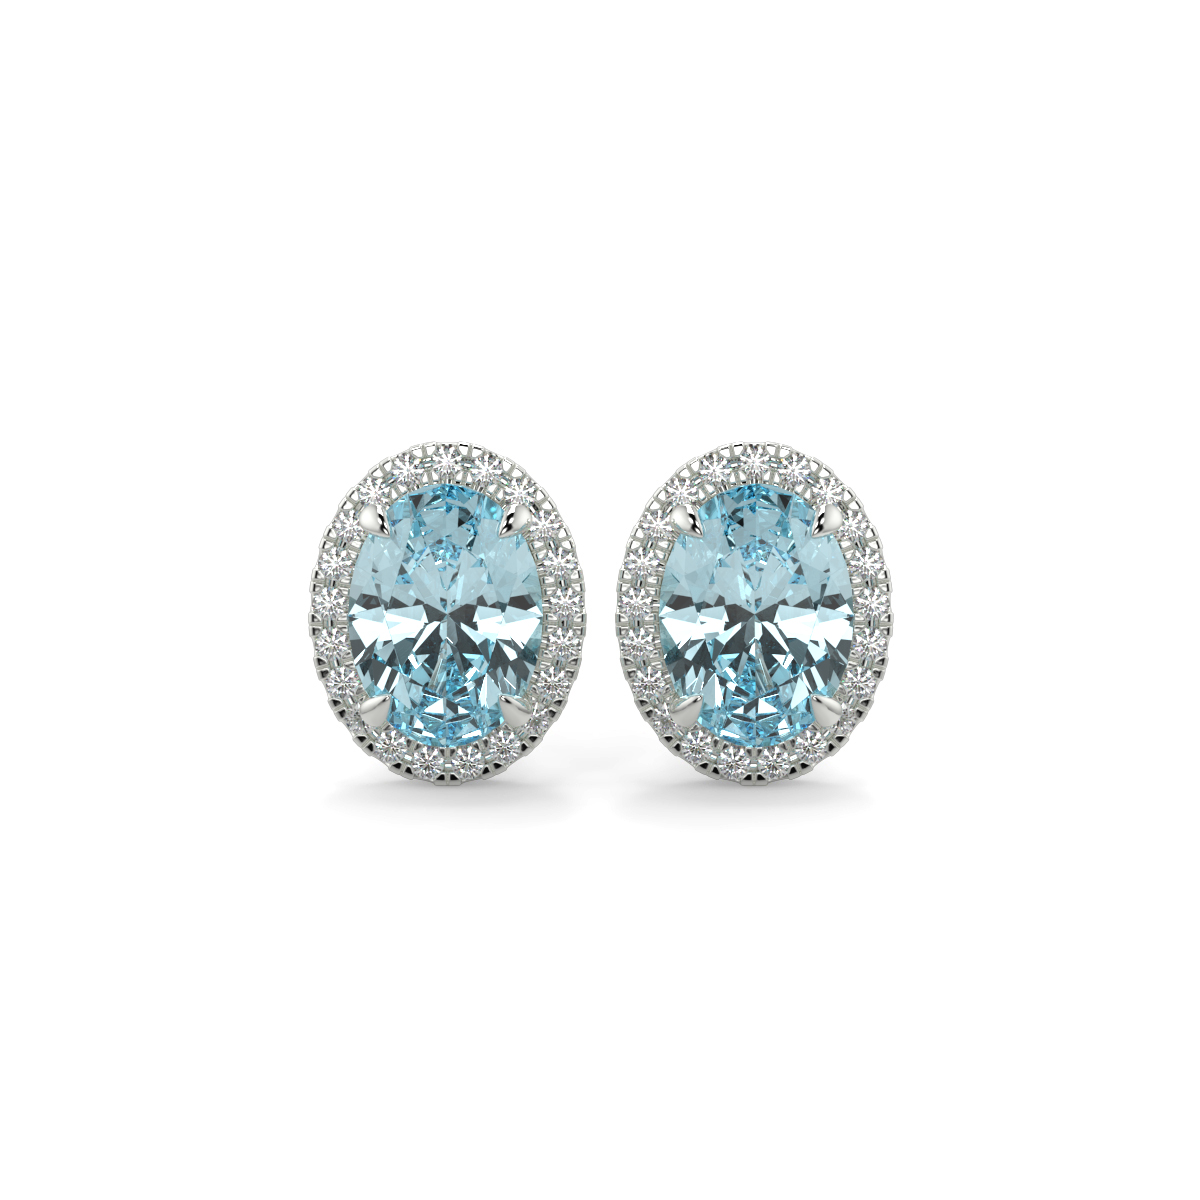 Aquamarine and Diamond Halo Earrings Platinum - ANNABELLE